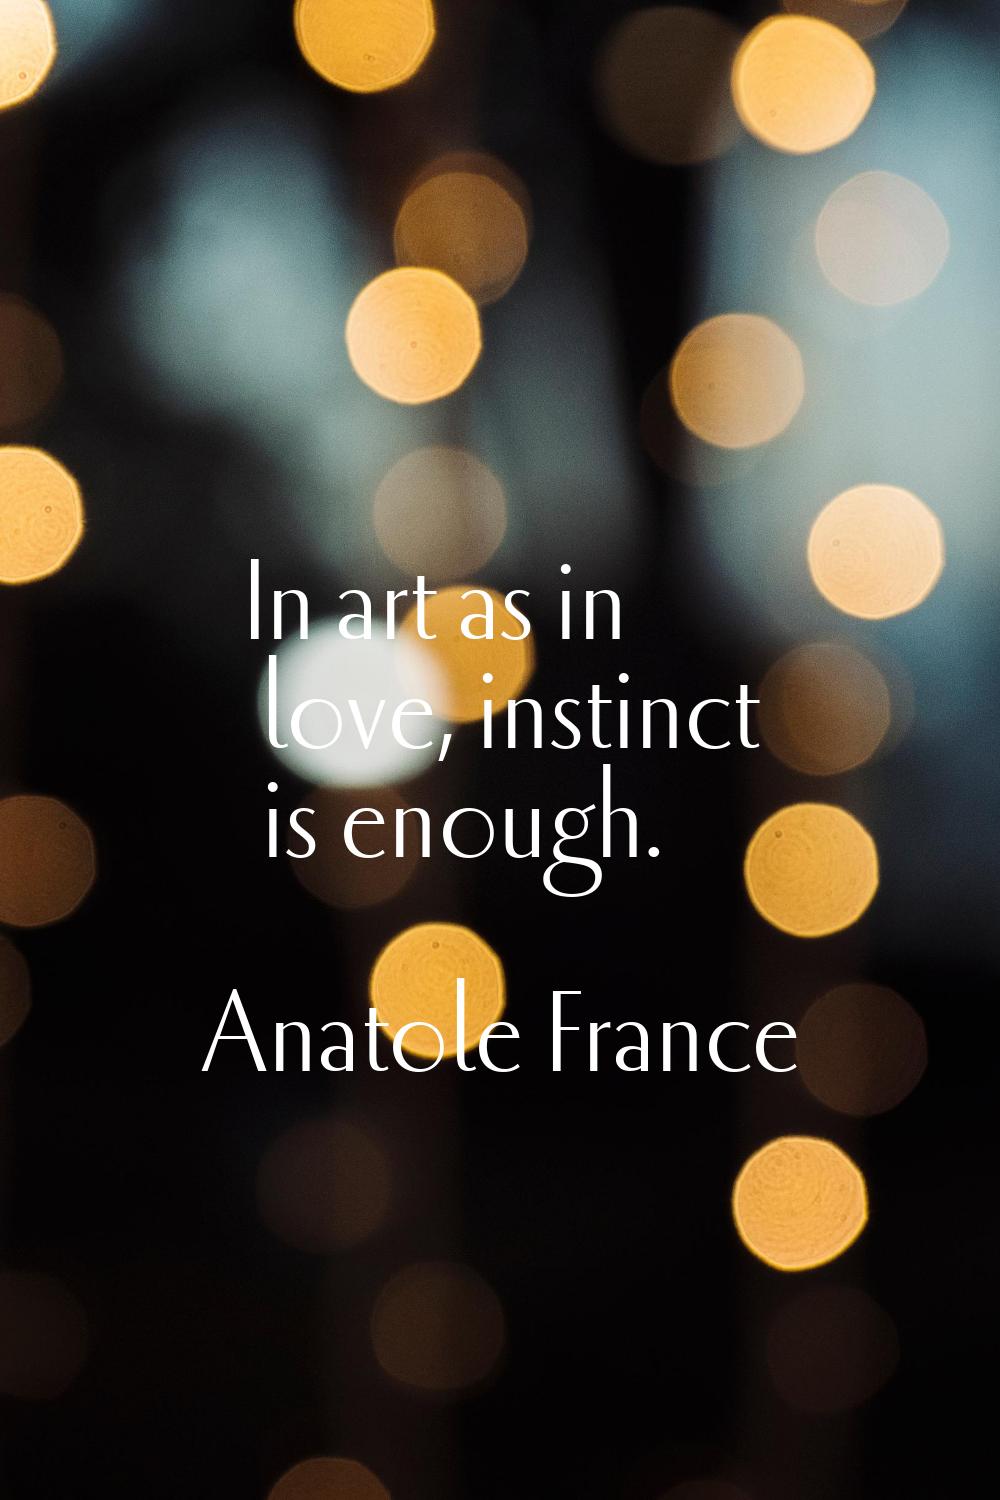 In art as in love, instinct is enough.